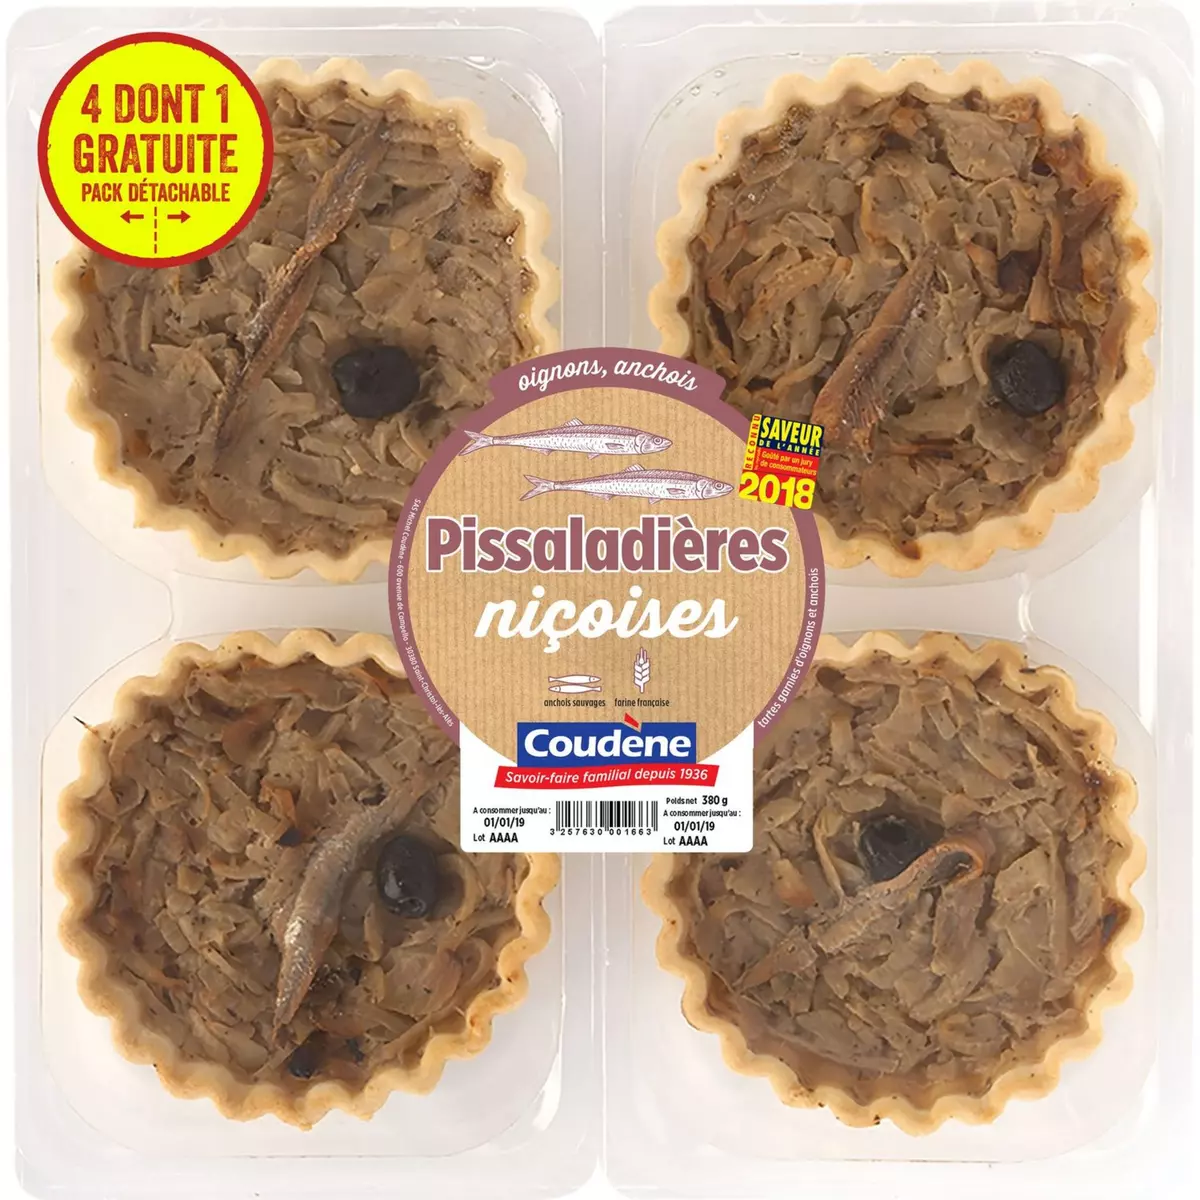 COUDENE Pissaladières niçoises aux anchois 4 pièces 4x95g dont 1 offerte